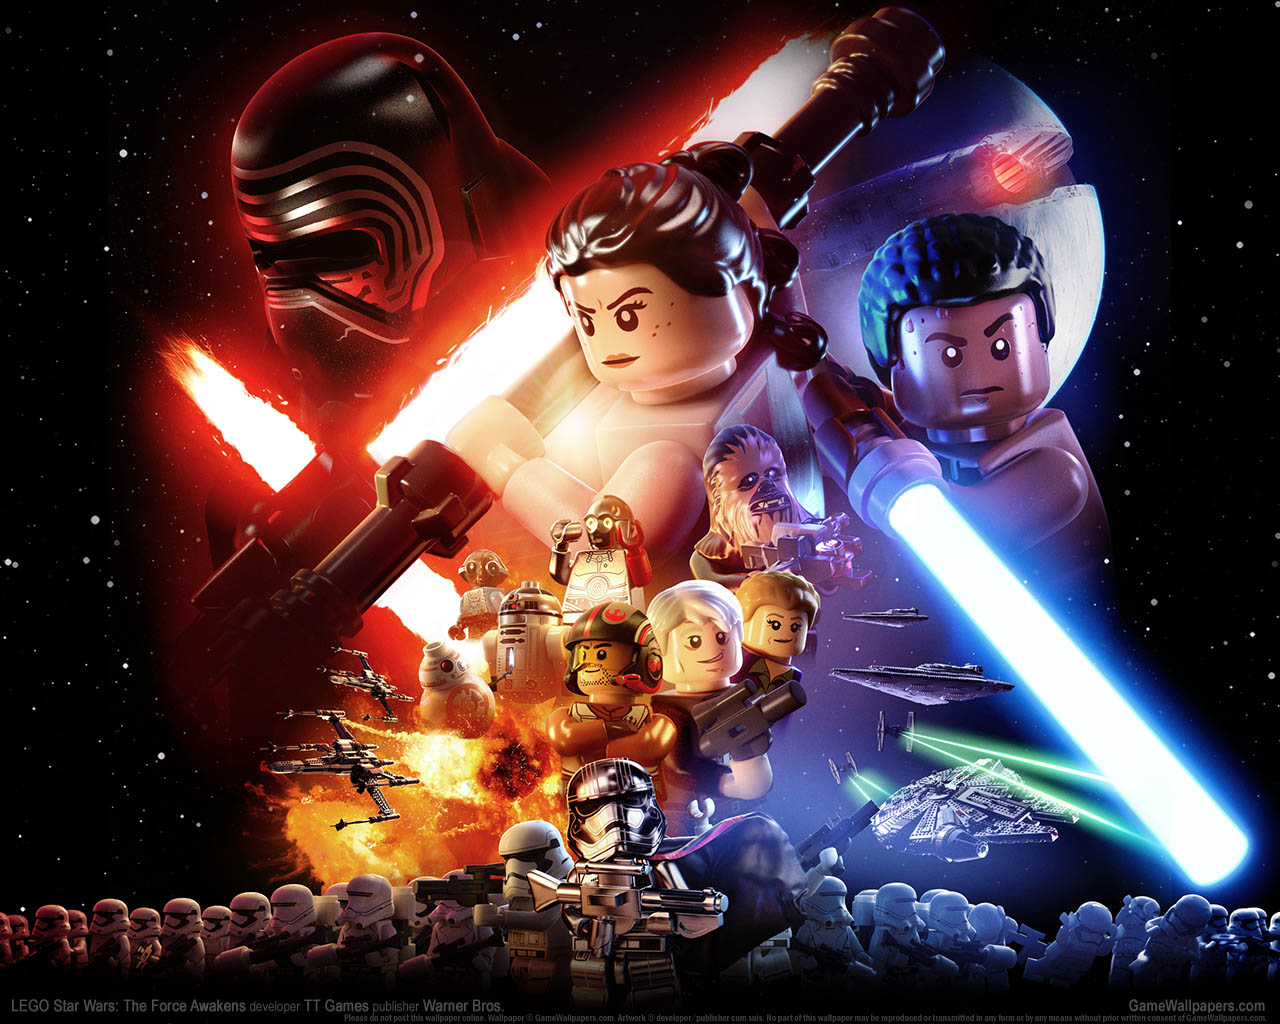 LEGO Star Wars: The Force Awakens fond d'cran 01 1280x1024